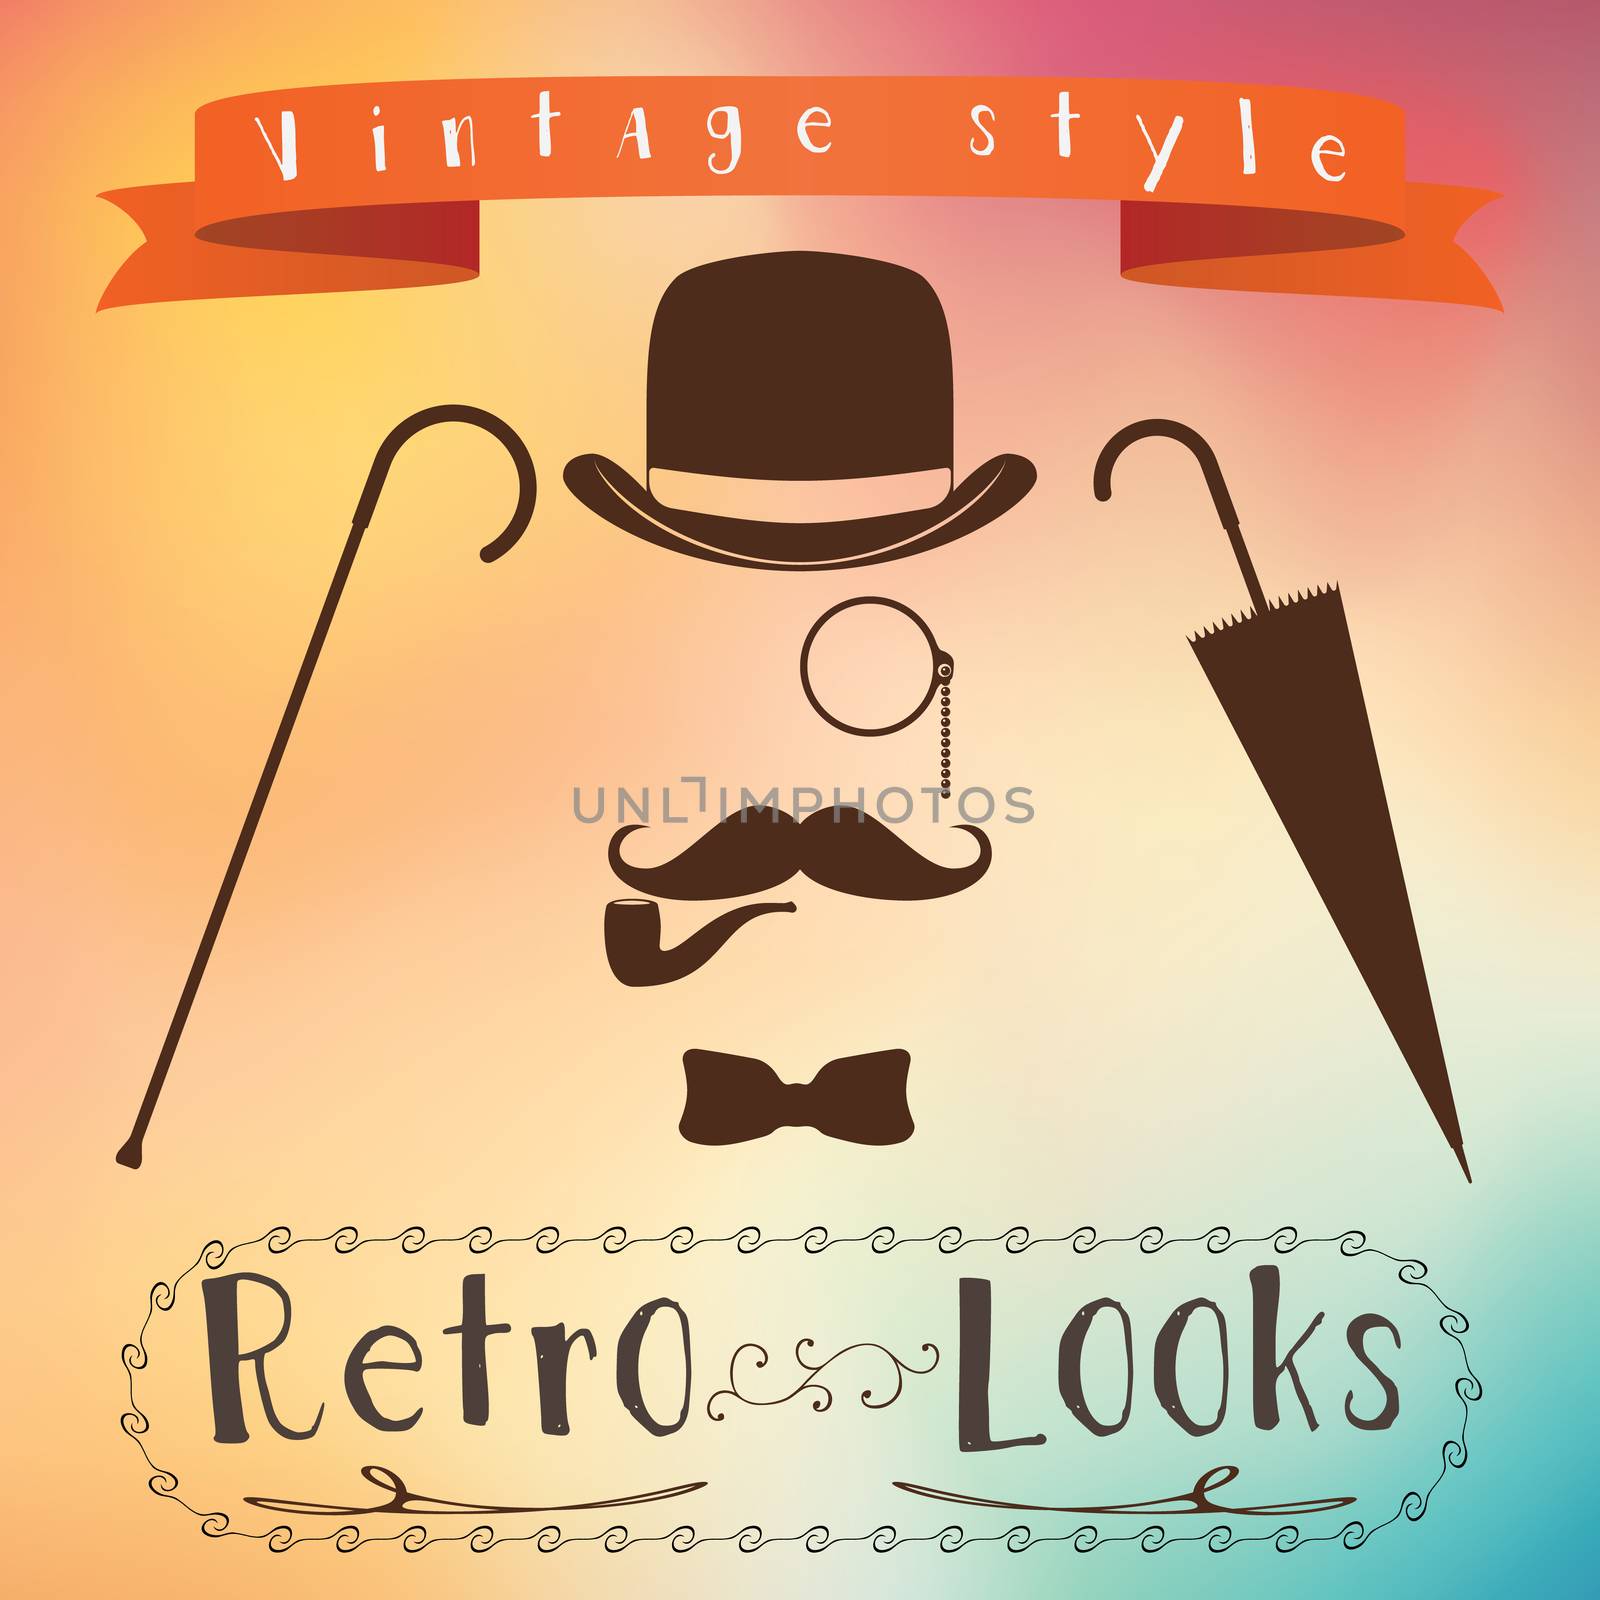 Retro gentleman elements set - bowler, moustache, tobacco pipe monocle, cane and umbrella by Lemon_workshop